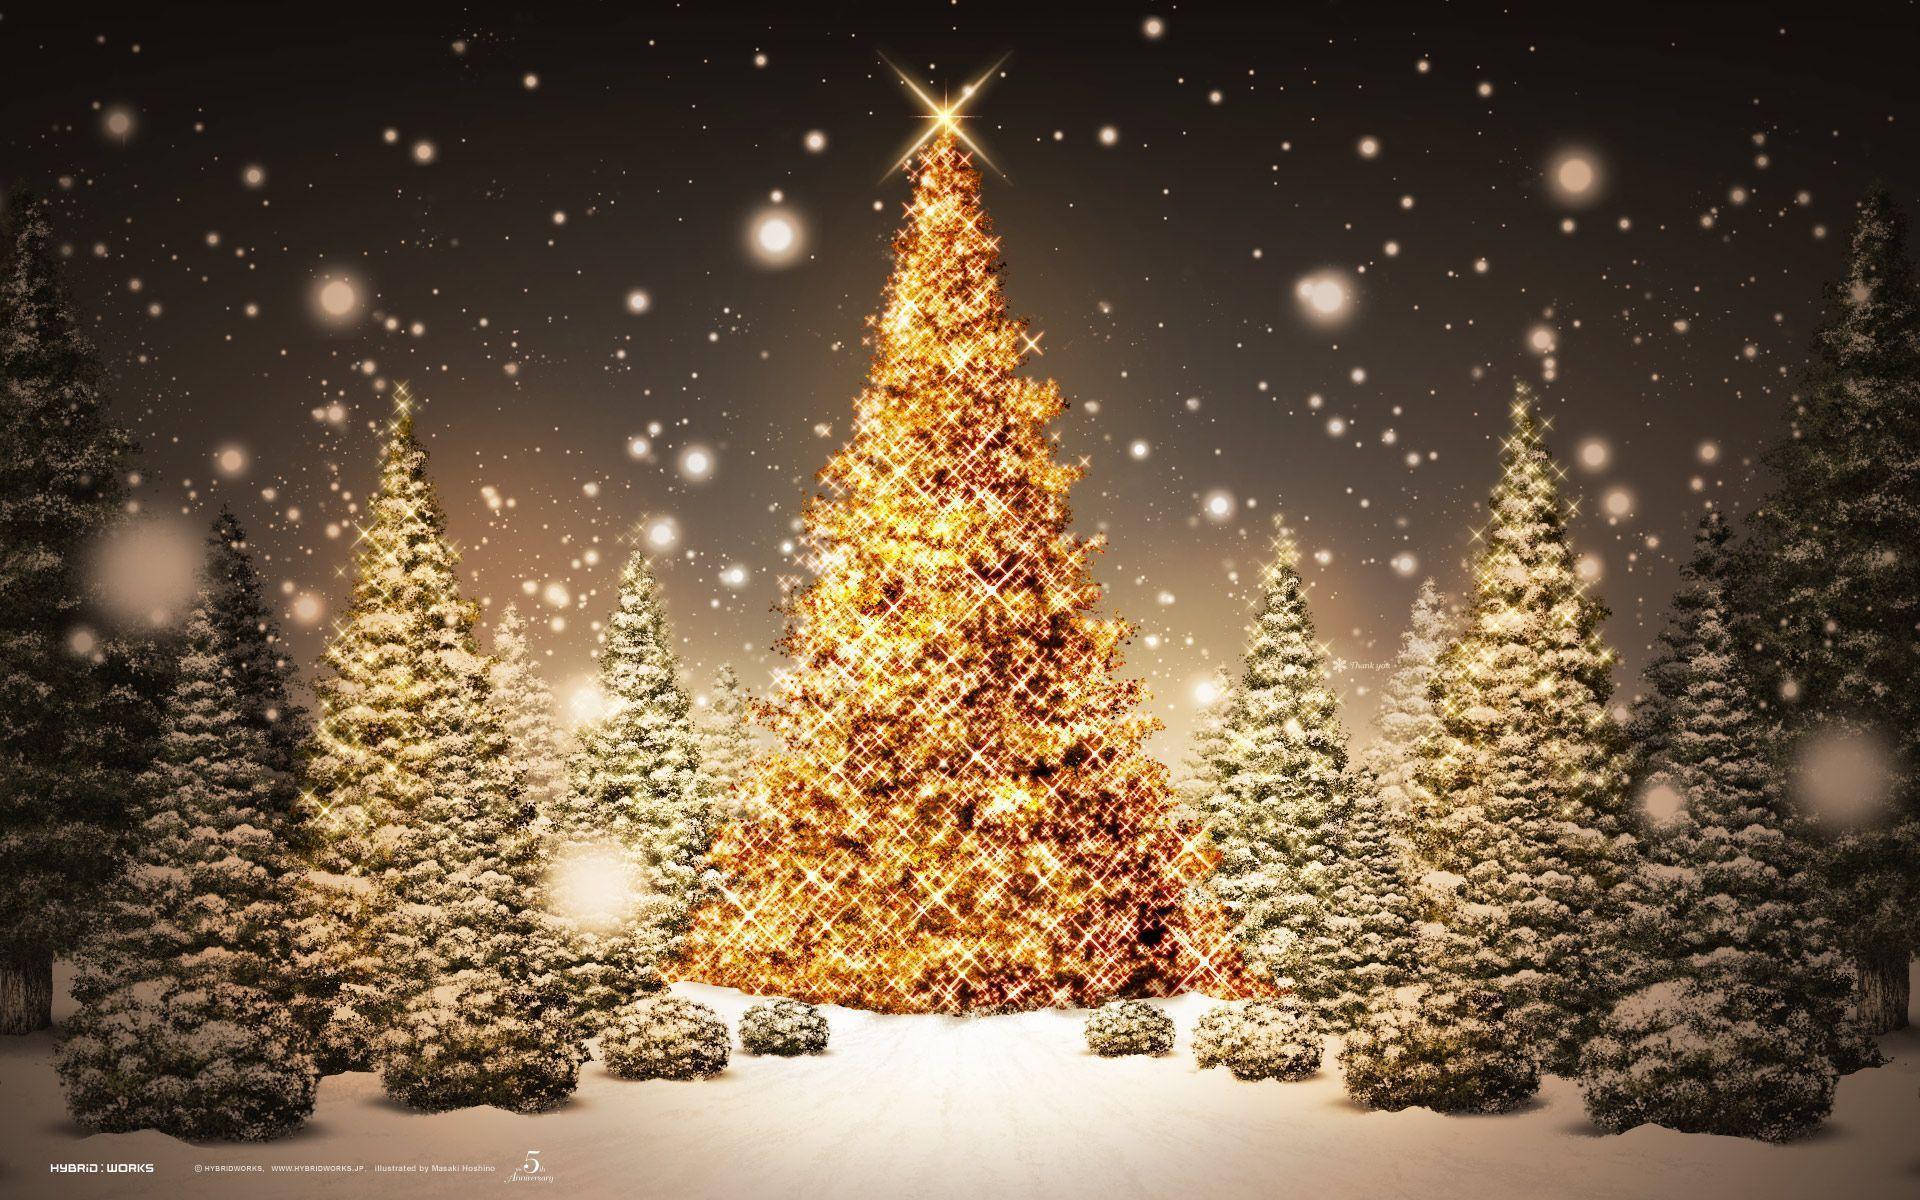 Beautiful Christmas Scenery Of Christmas Trees Christmas Lights